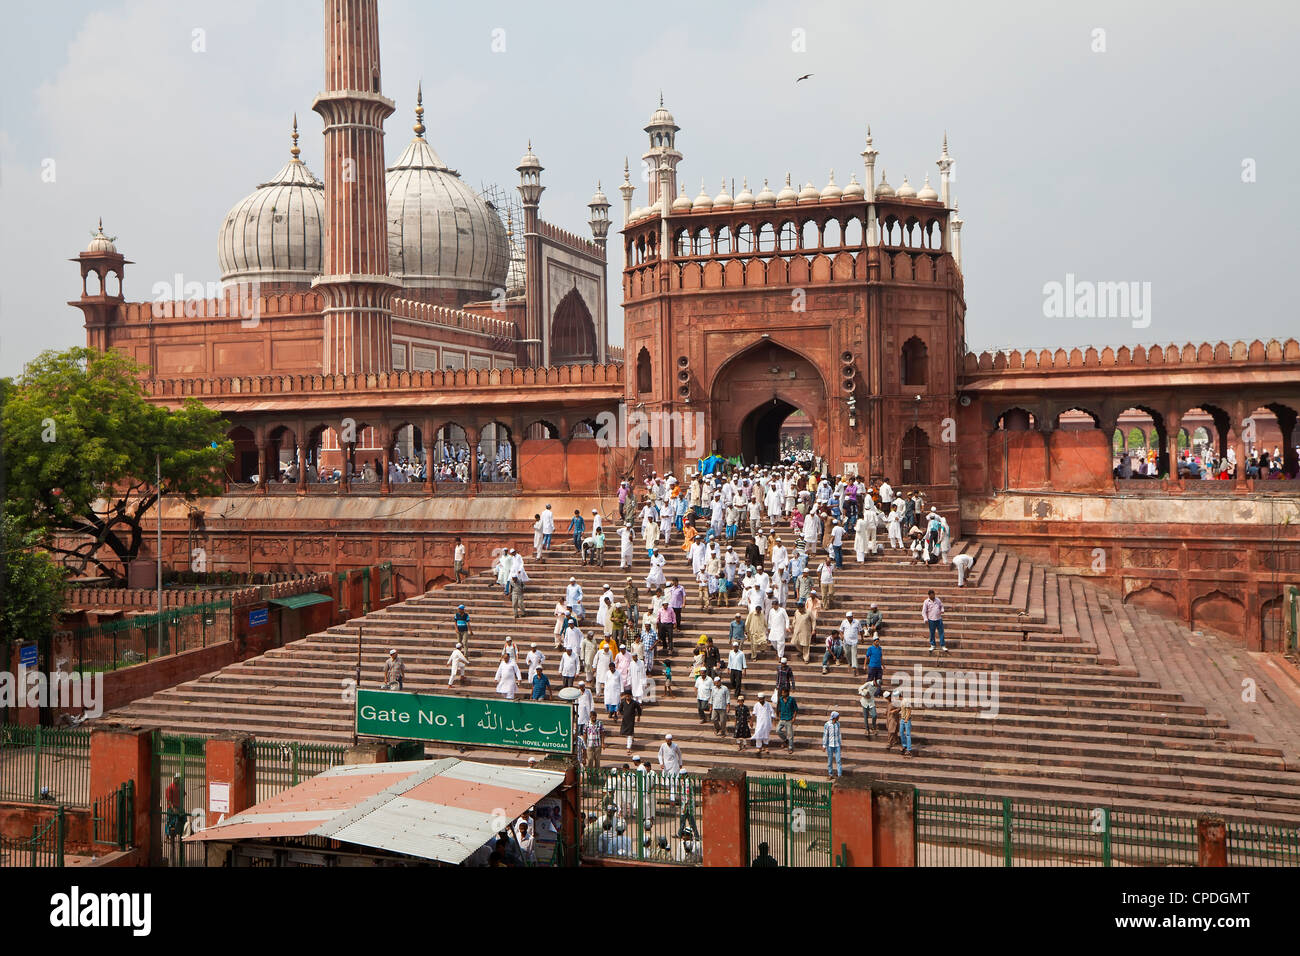 Menschen verlassen die Jama Masjid (Freitagsmoschee) nach dem Freitagsgebet, Alt-Delhi, Delhi, Indien, Asien Stockfoto